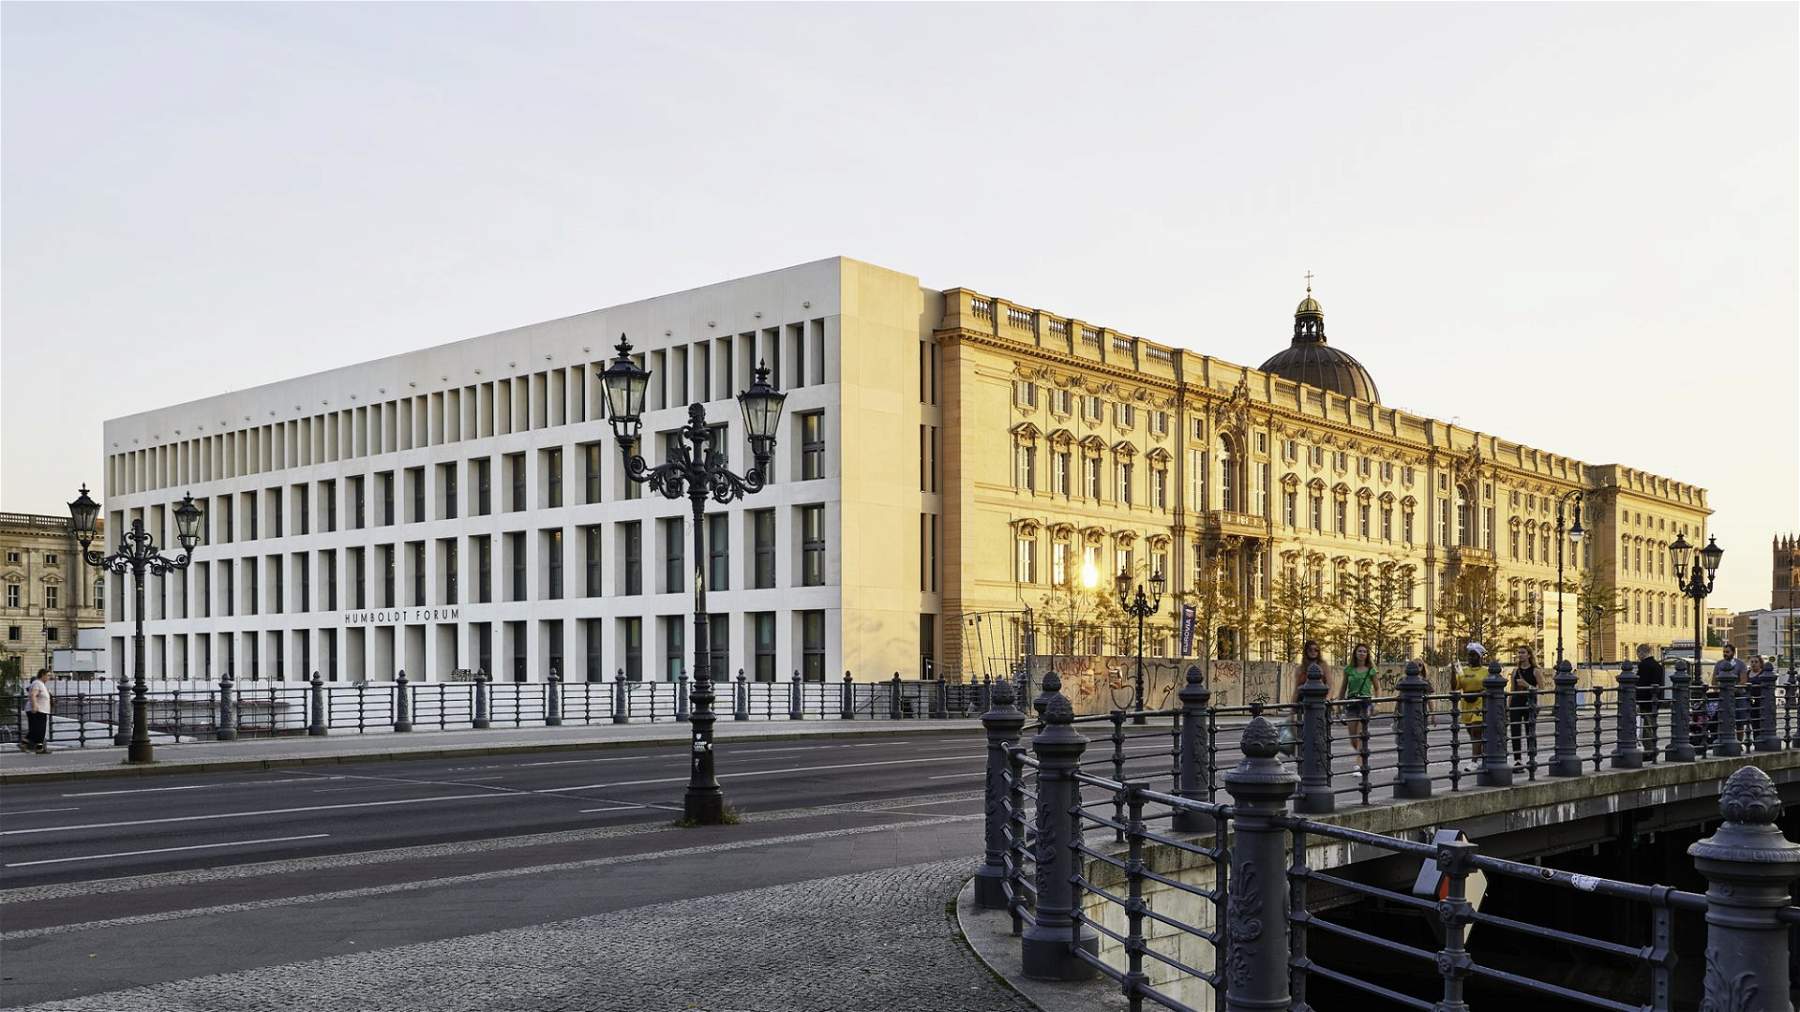 A Berlino apre un nuovo, enorme museo: l'Humboldt Forum. È il “British Museum” tedesco